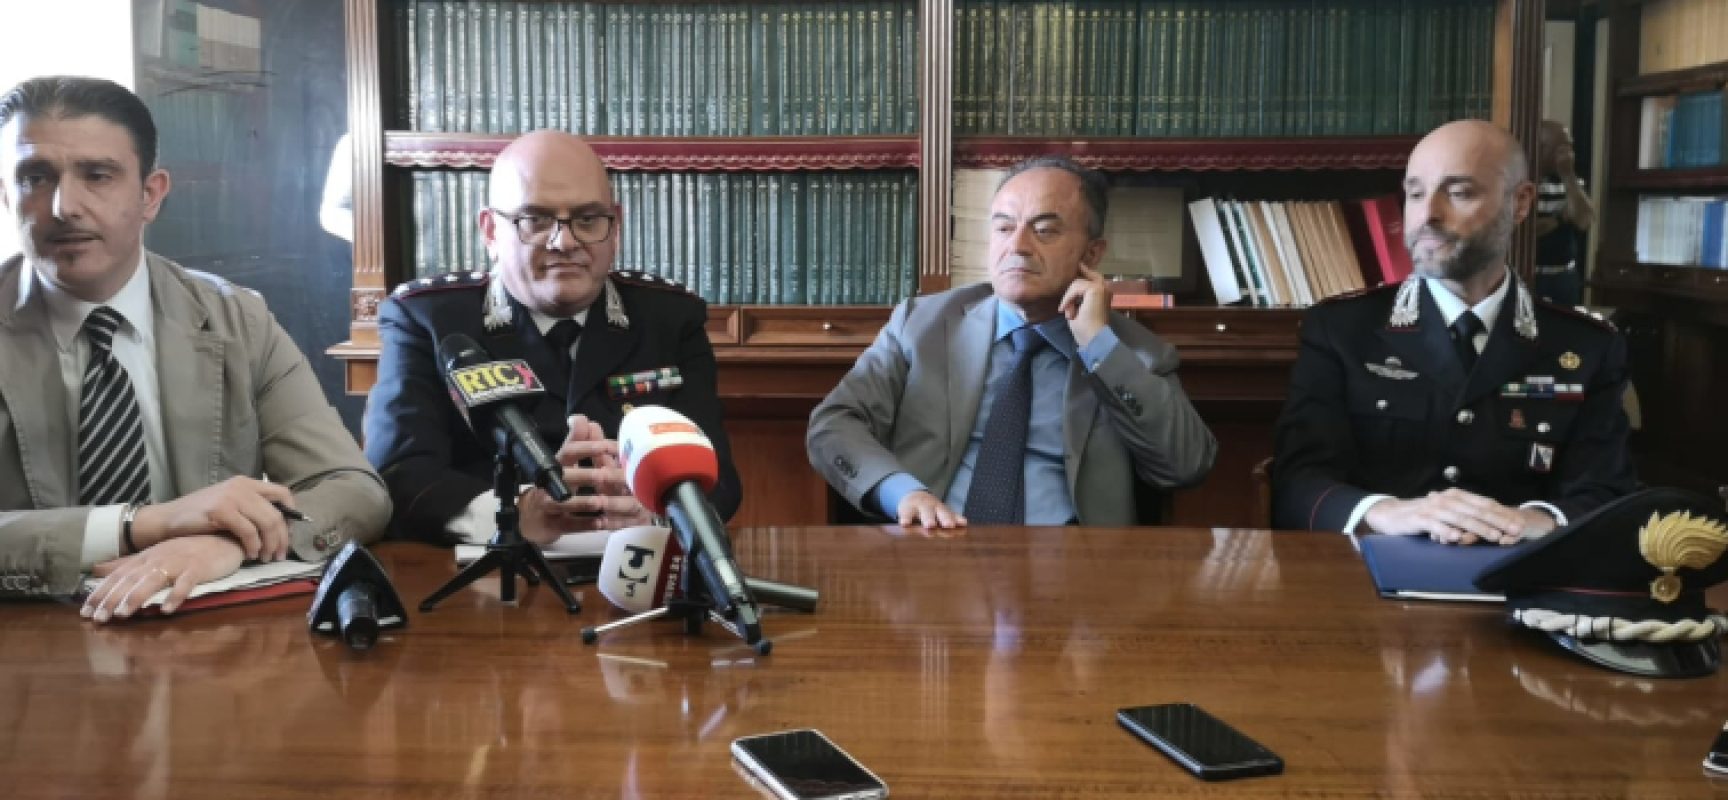 Carcere Cosenza come “albergo” per detenuti, due agenti arrestati, offesa memoria Sergio Cosmai